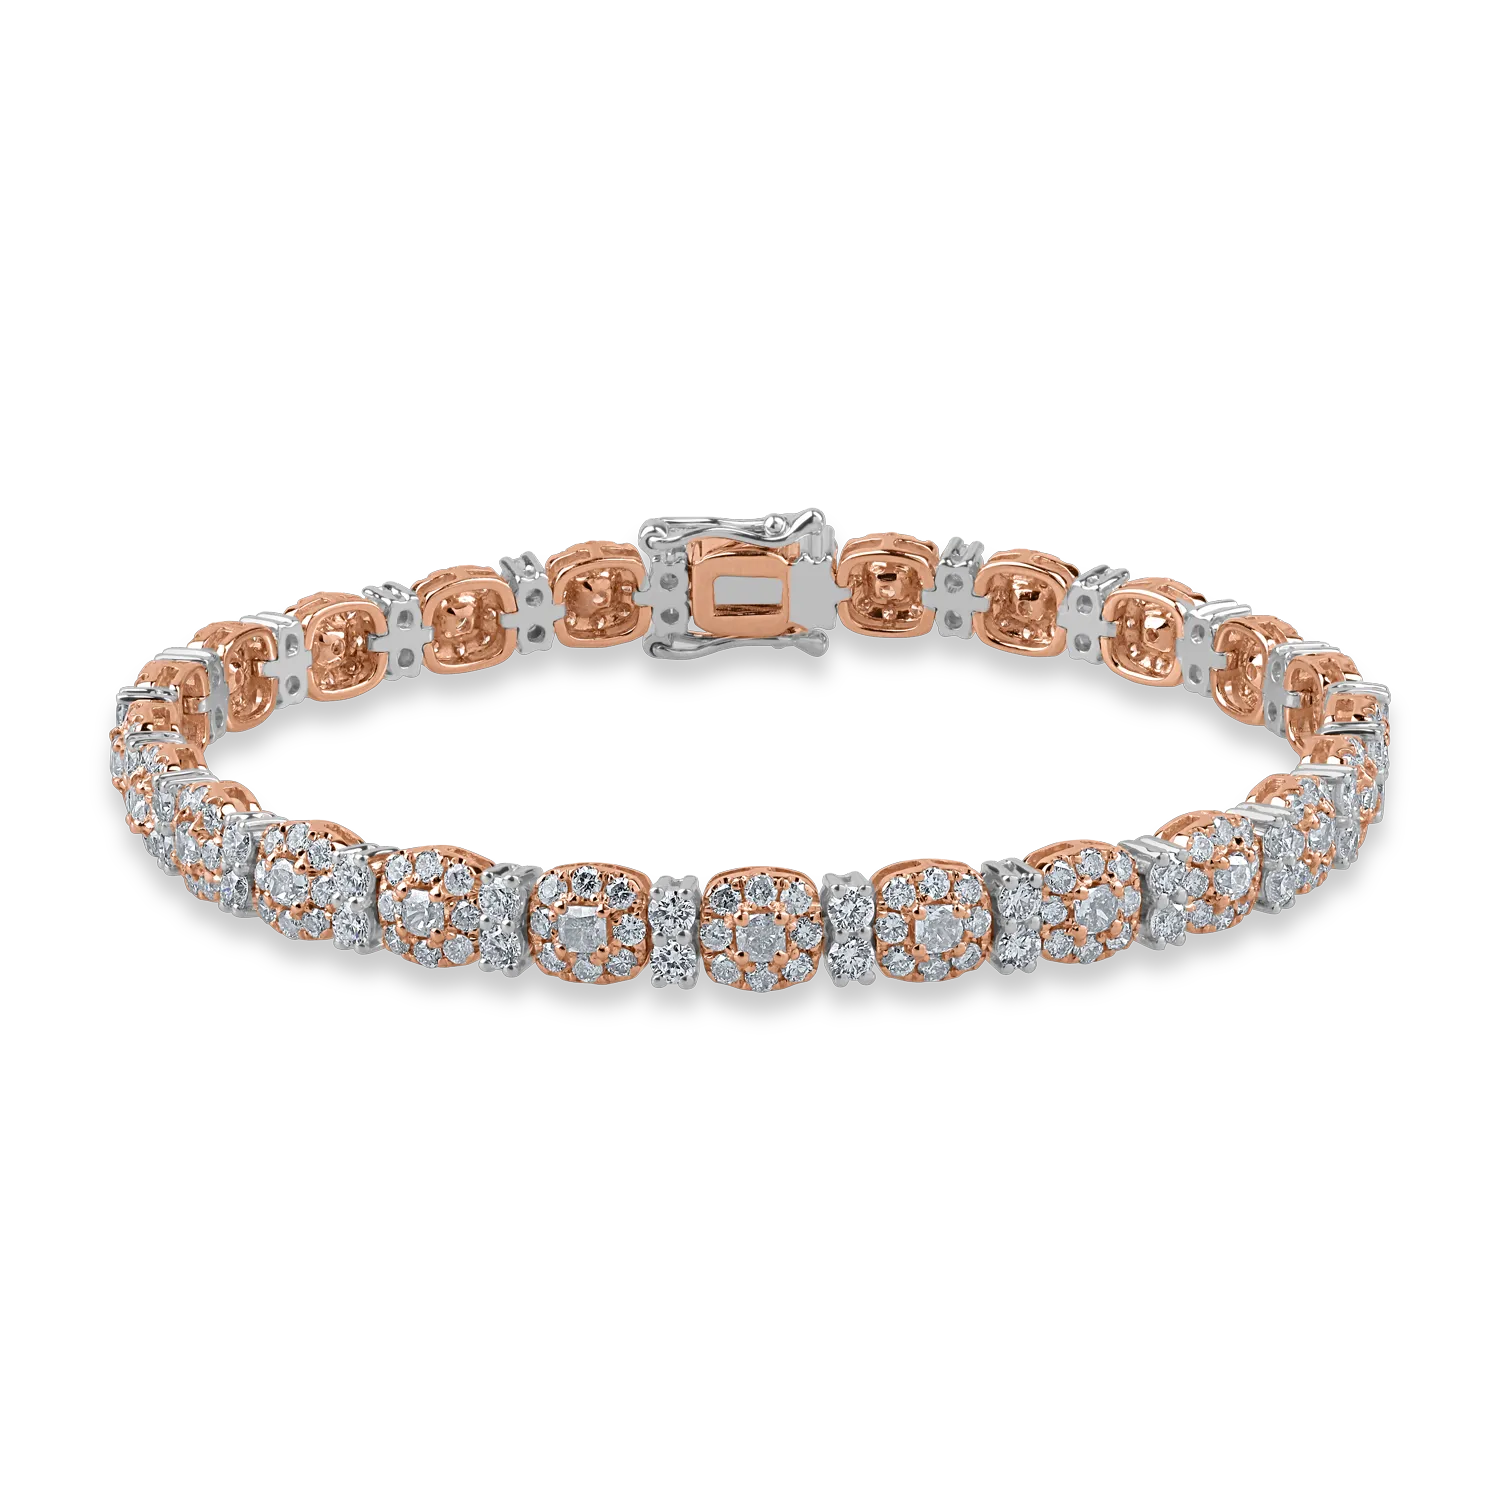 Bransoletka tenisowa z białego różowego złota z różowymi diamentami o masie 3.57ct i przezroczystymi diamentami o masie 1.66ct